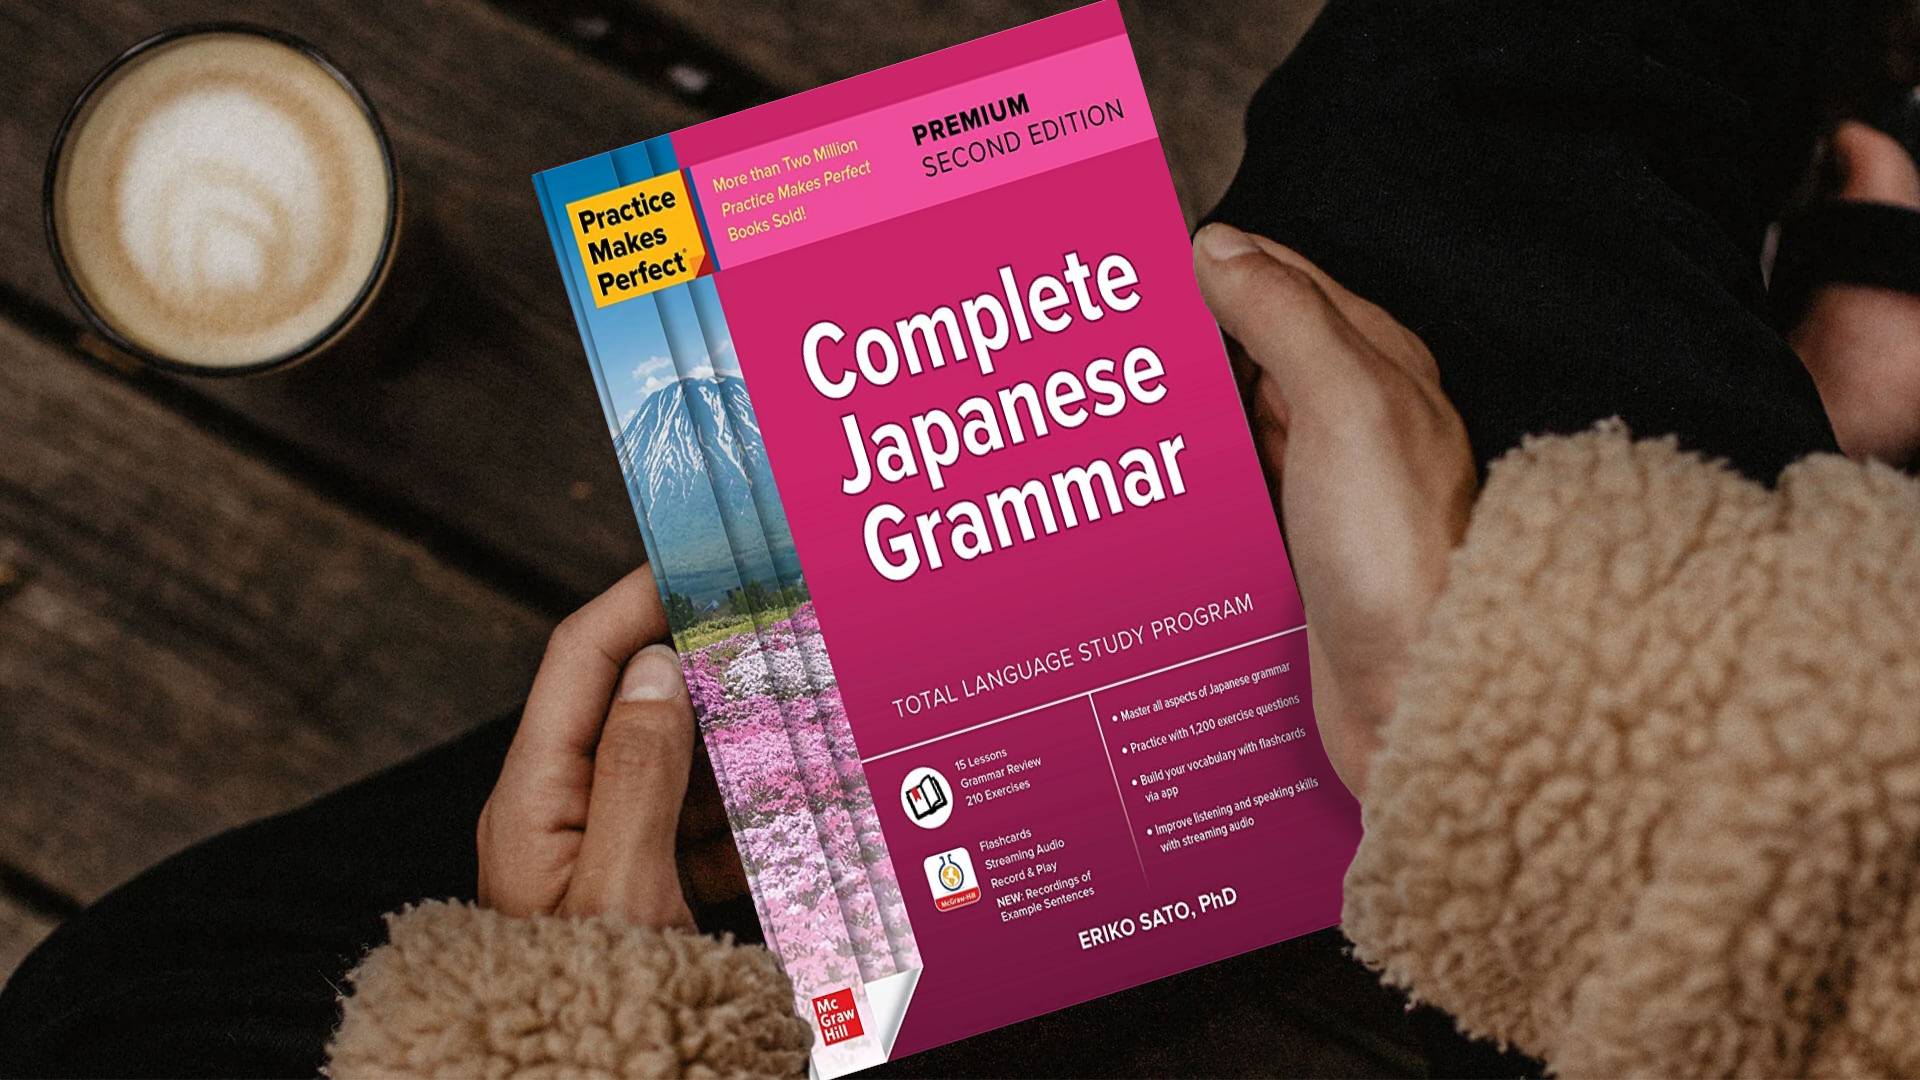 خرید کتاب زبان | فروشگاه اینترنتی کتاب زبان |  Practice Makes Perfect Complete Japanese Grammar Premium Second Edition گرامر ژاپنی